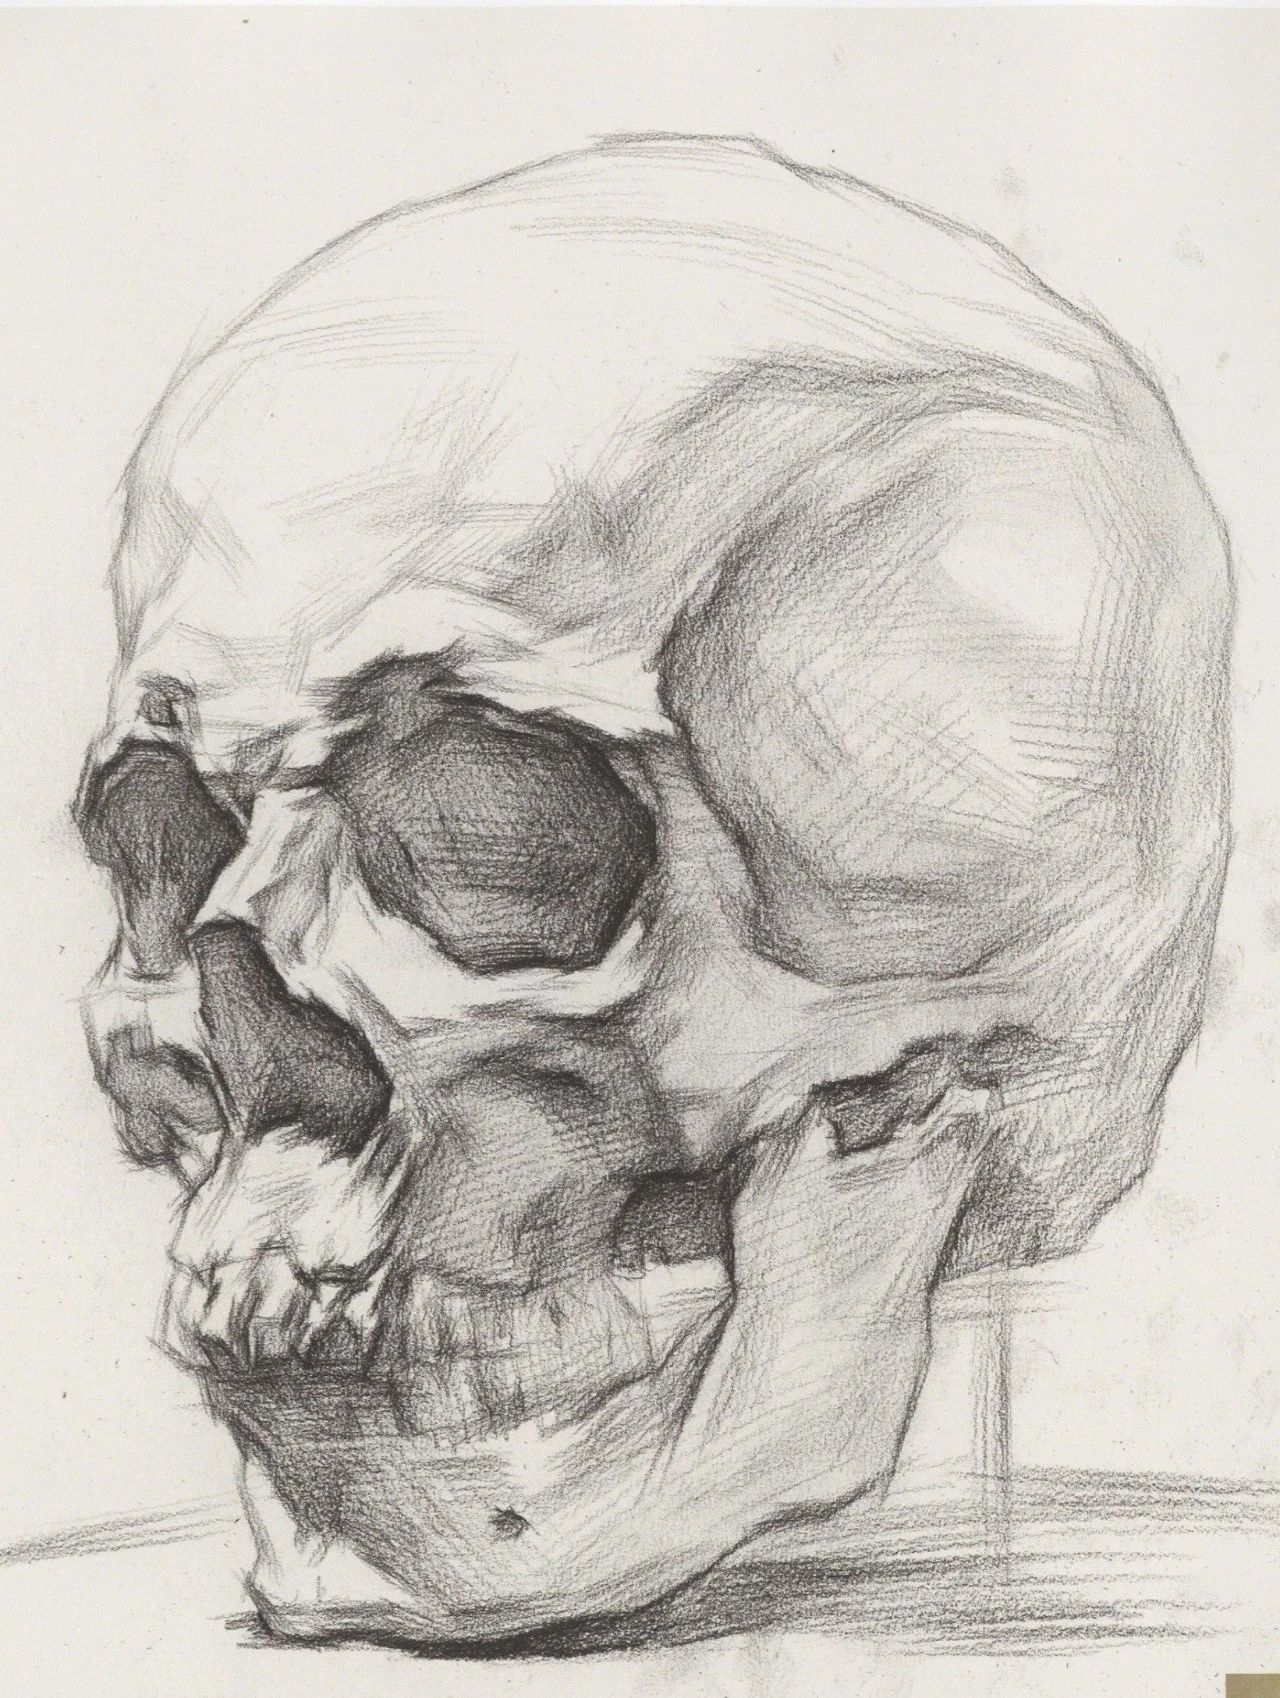 干货——从结构学习素描头骨的刻画细节